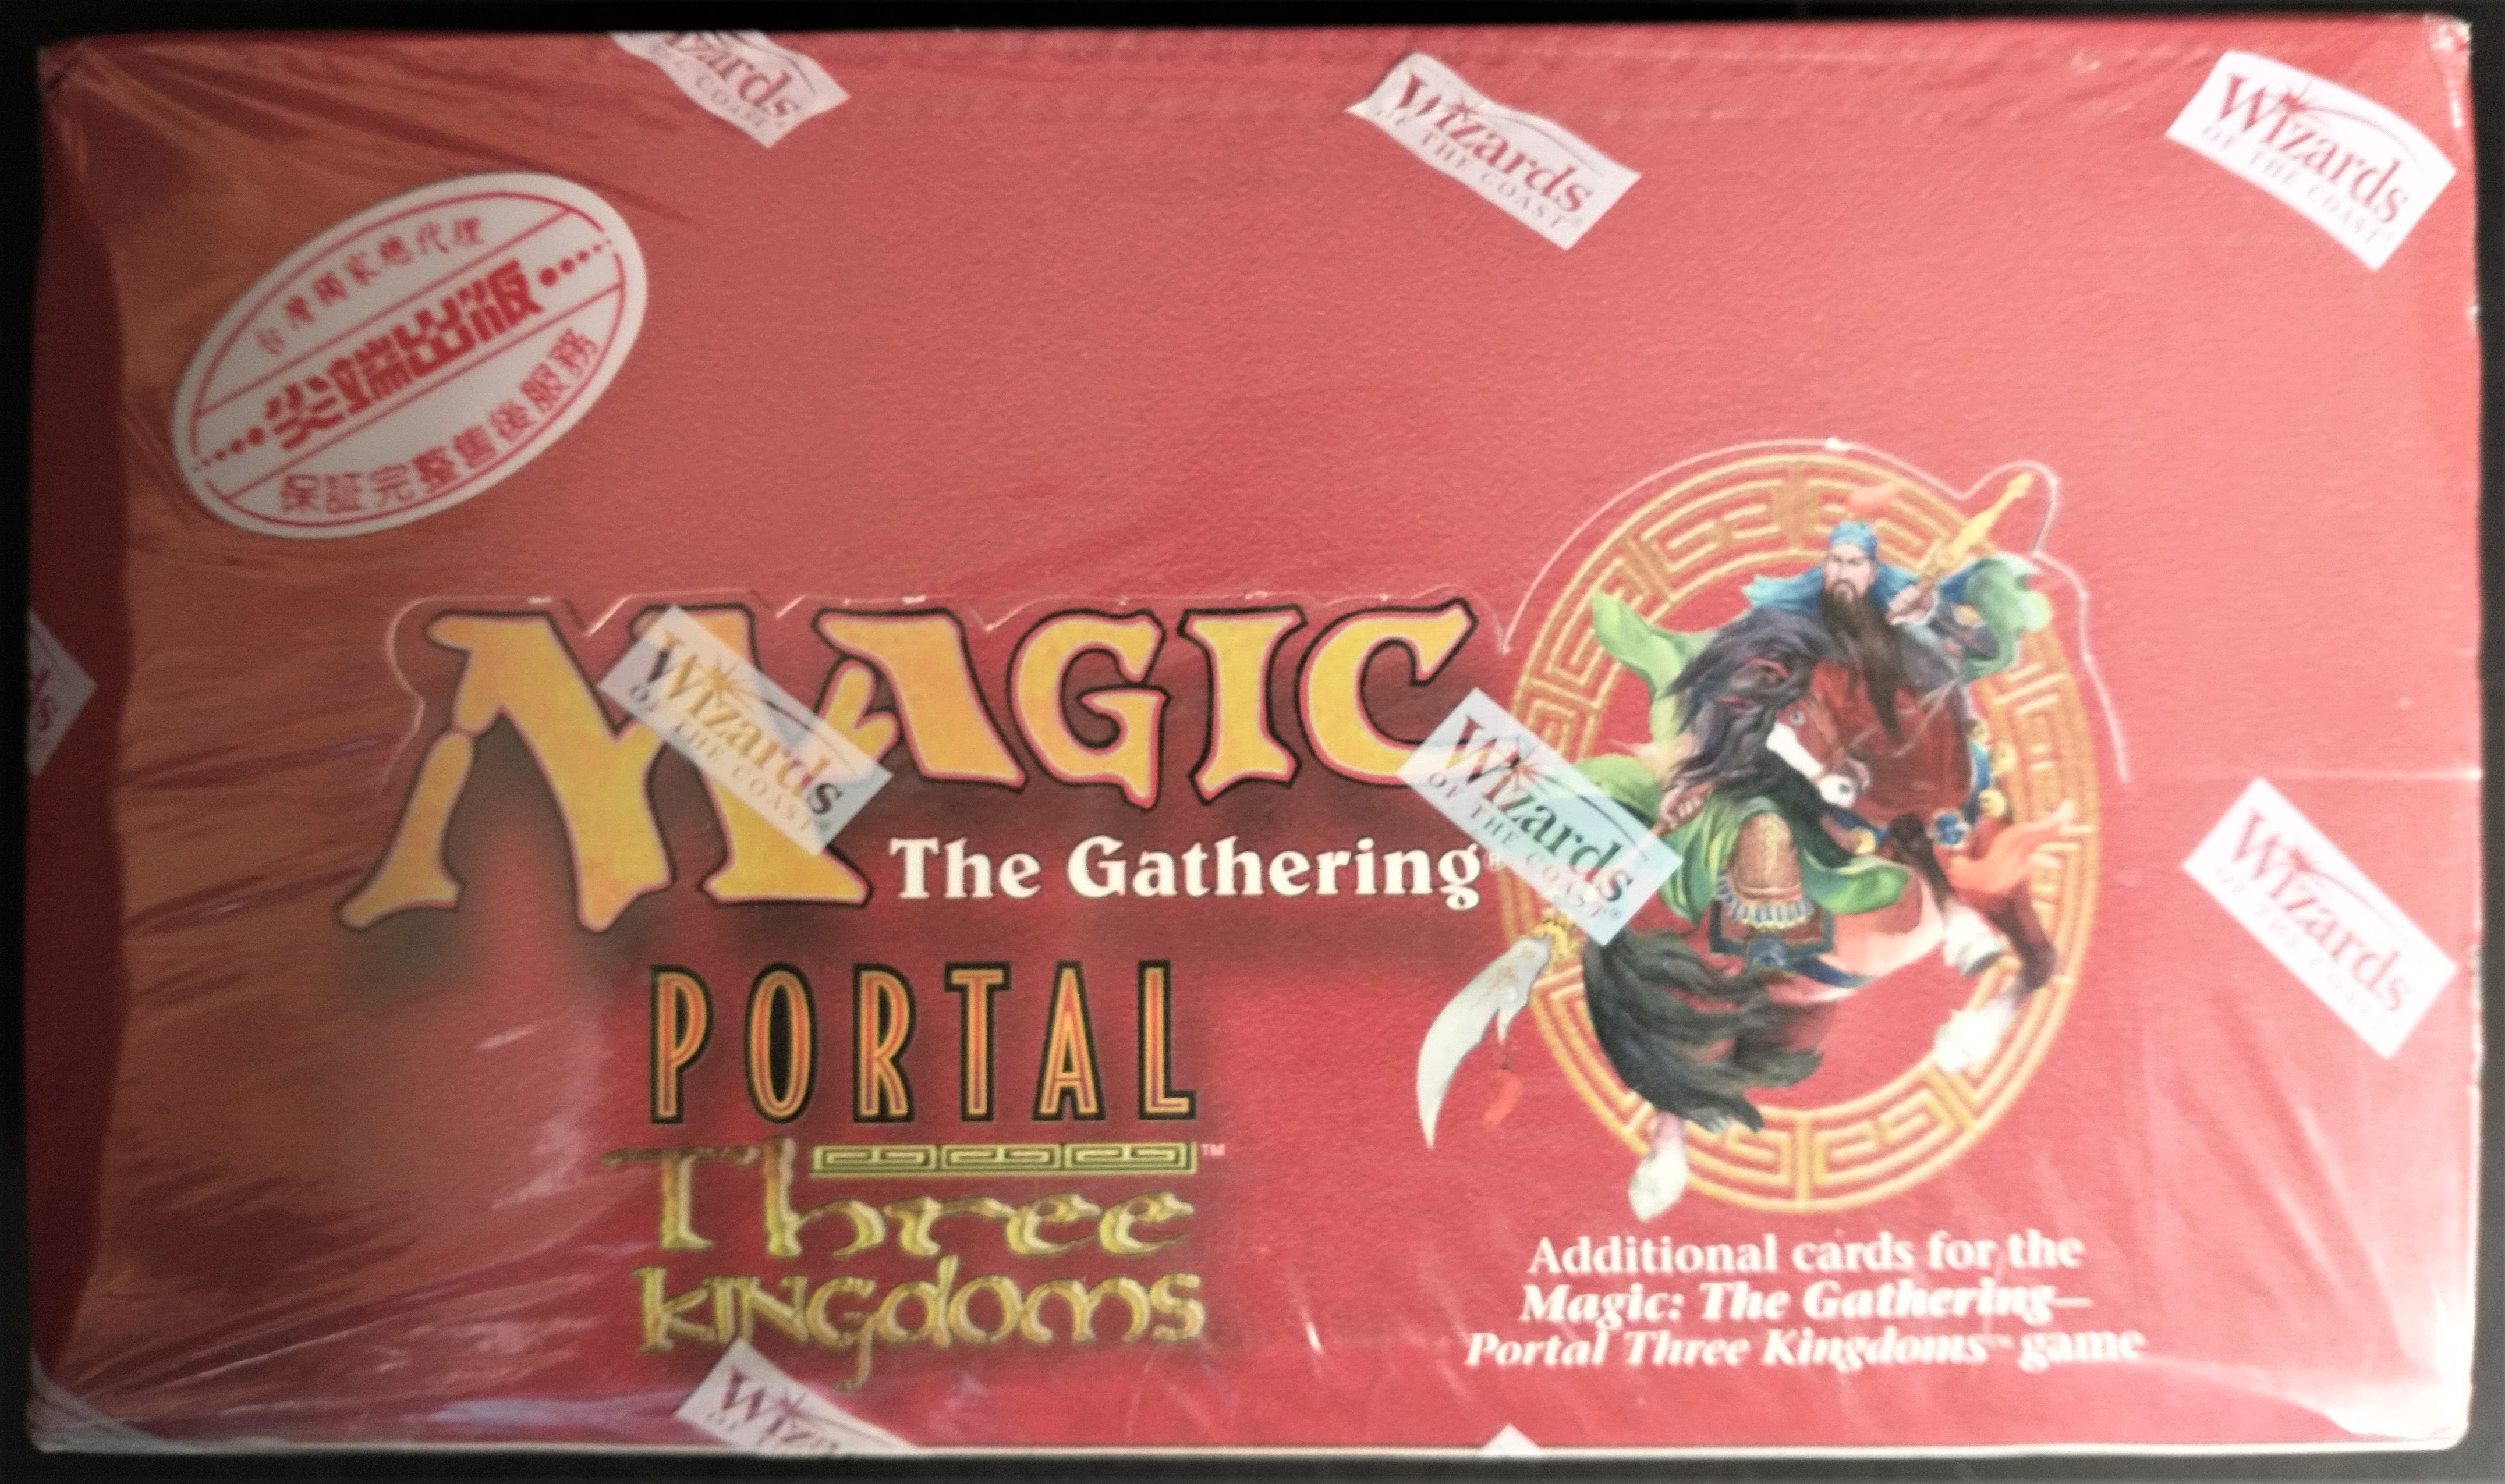 Portal Three Kingdoms Booster Box (1005)